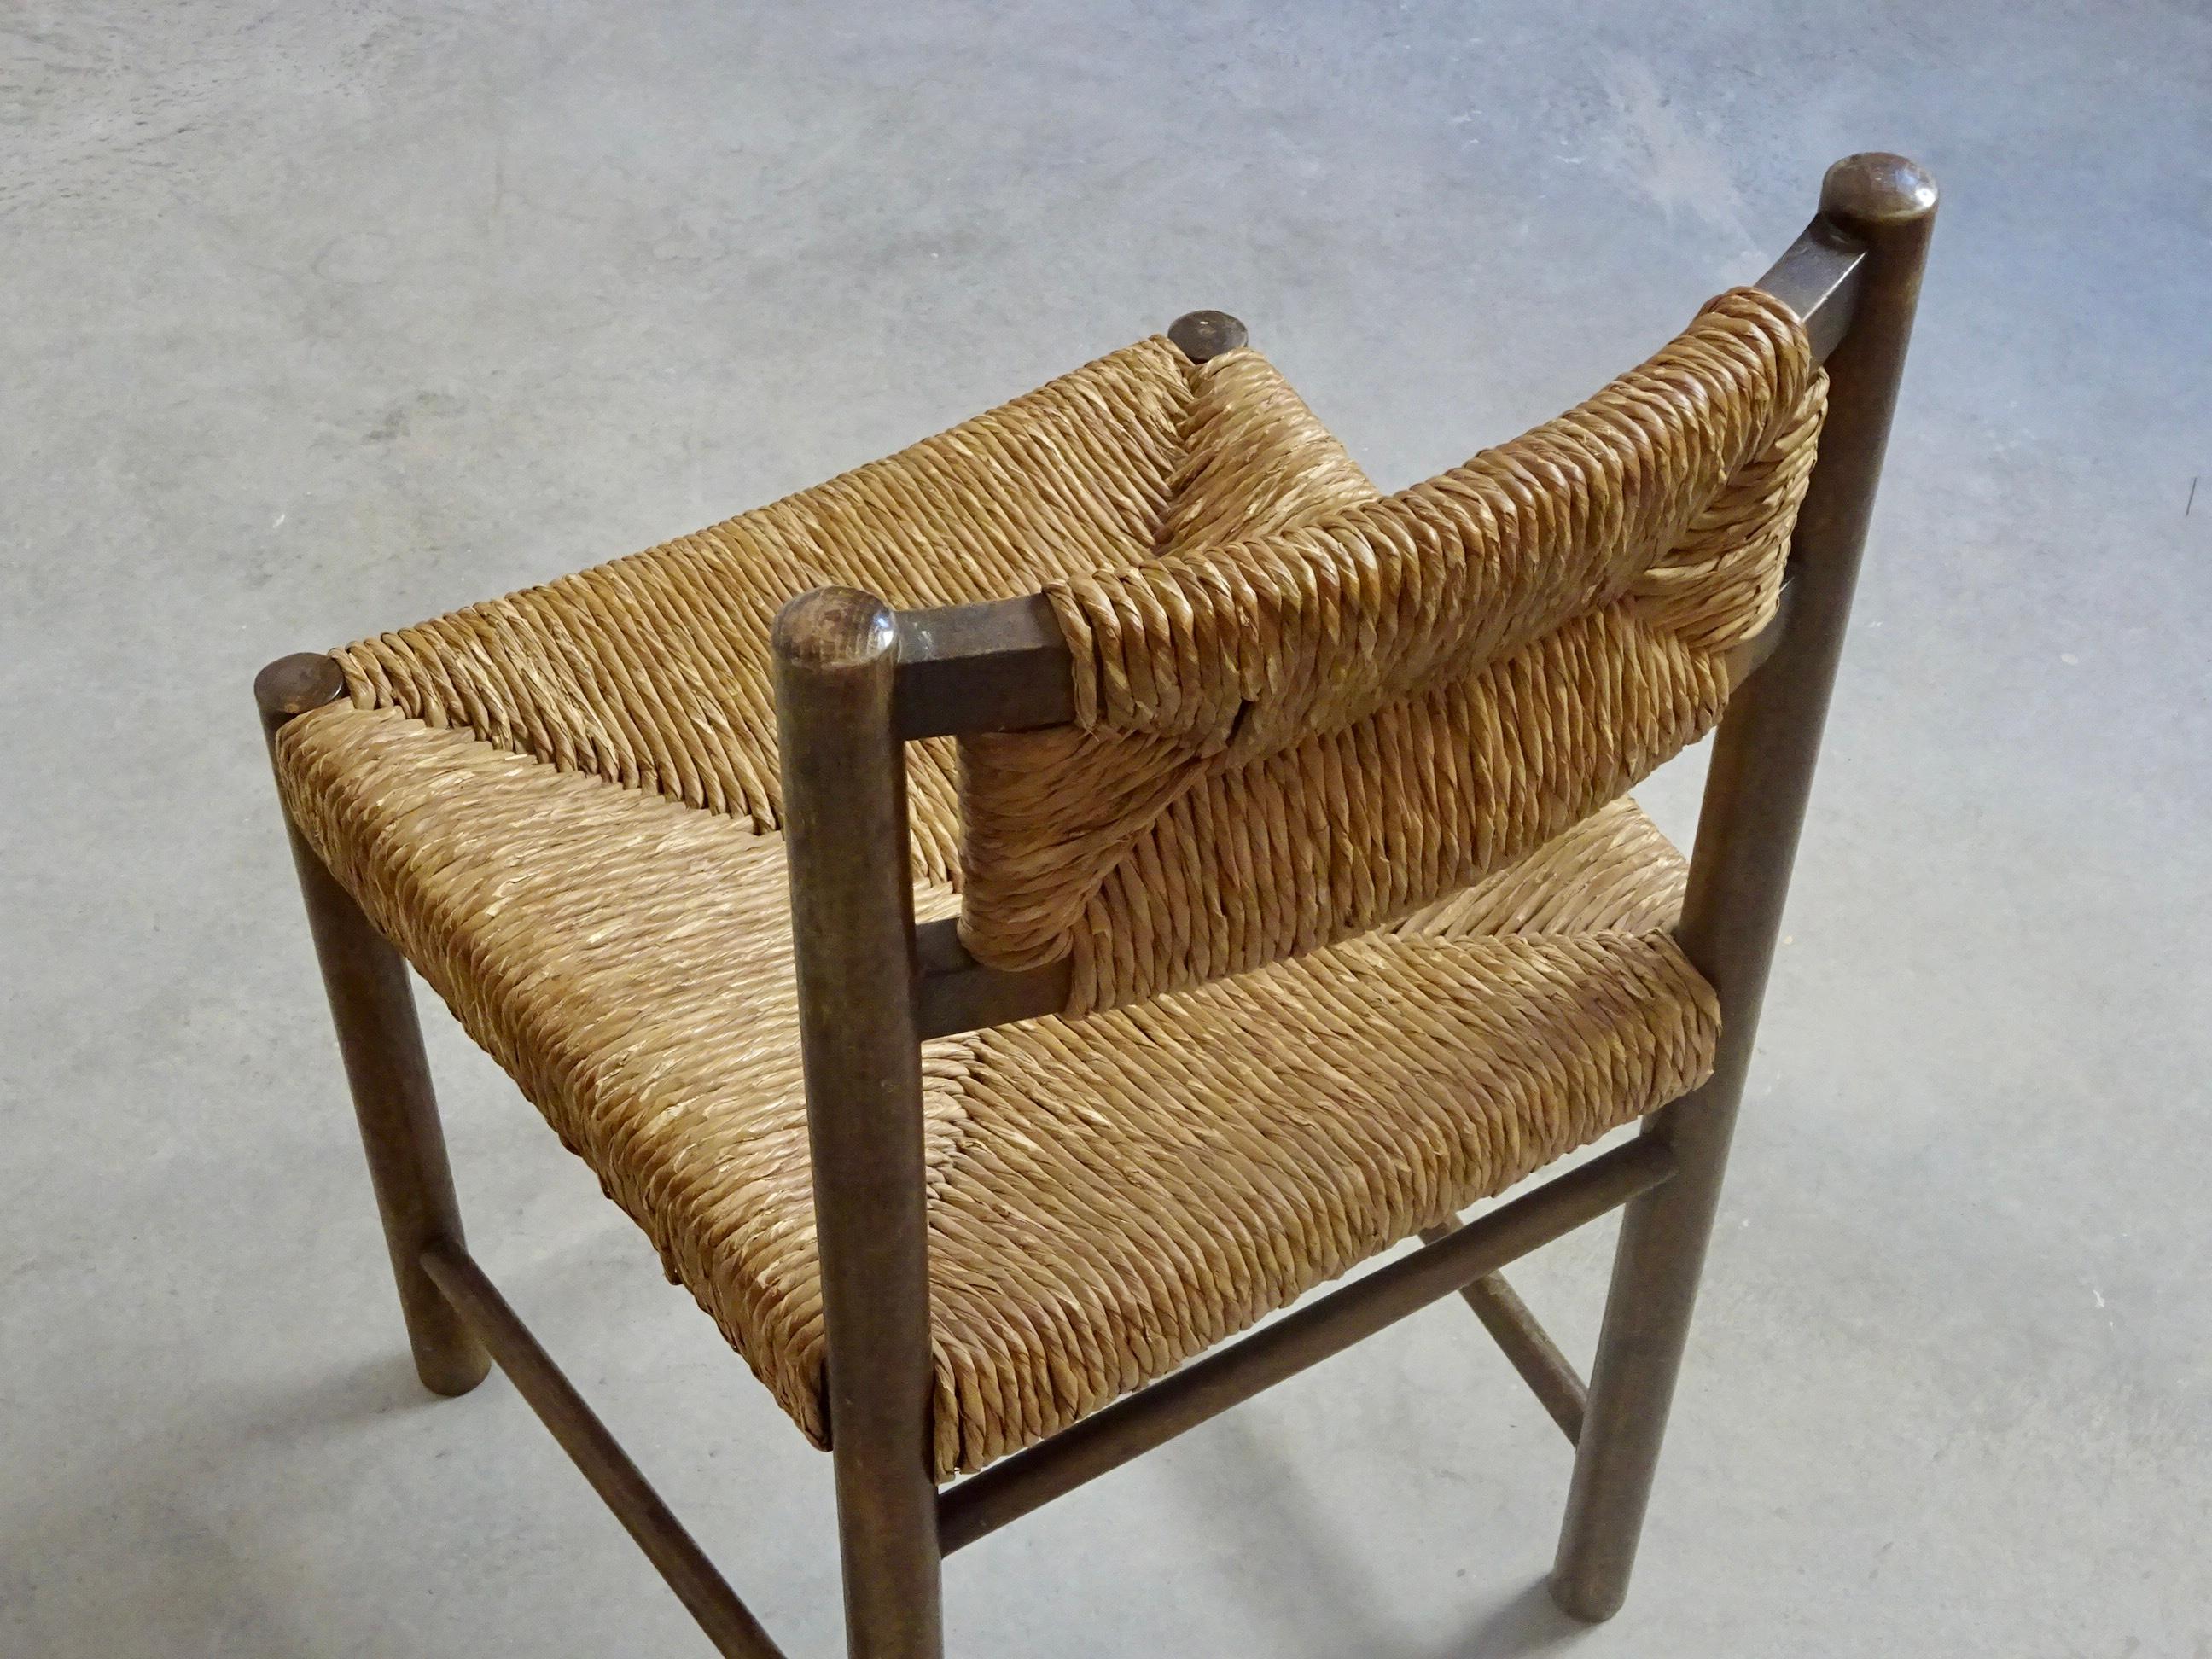 Ensemble de quatre chaises conçues par Jordi Vilanova i Bosch à Barcelone vers 1960. Des lignes modernes inspirées de la tradition populaire méditerranéenne. État d'origine, avec structure en bois résistant et assise et dossier en fibre de jonc.